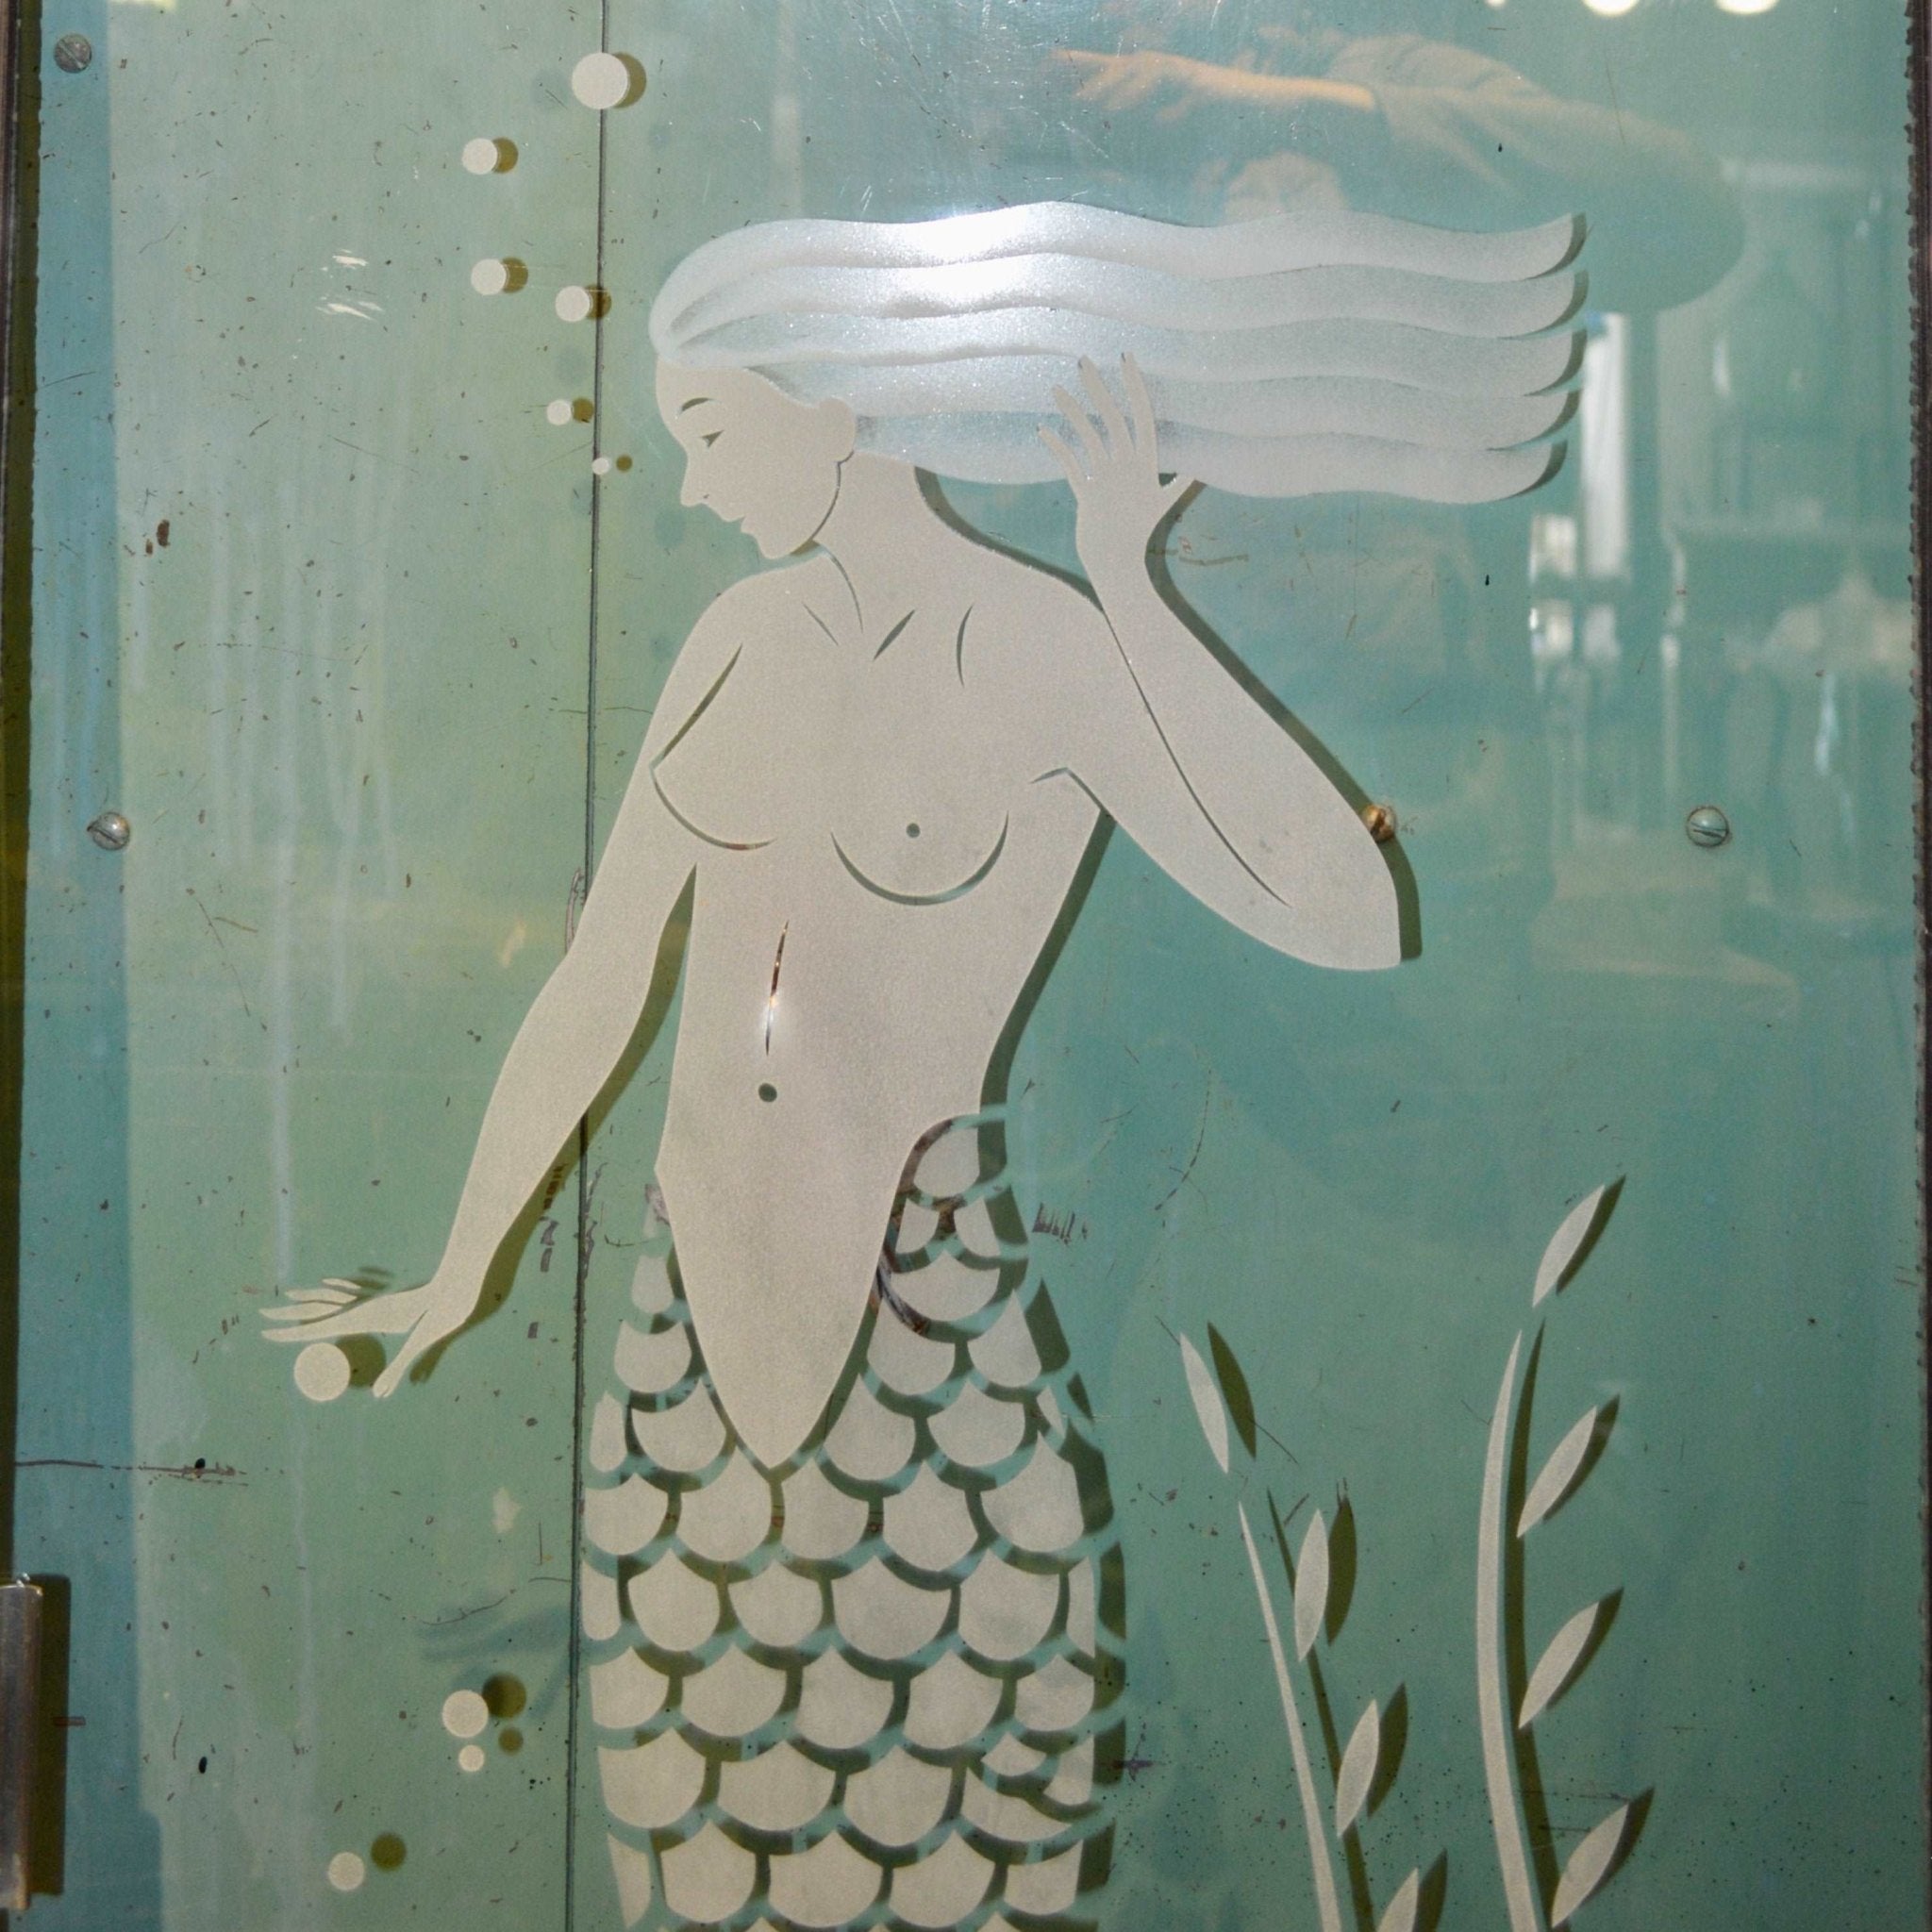 1950s Shower Door With Etched Mermaid Design - Salvage-Garden